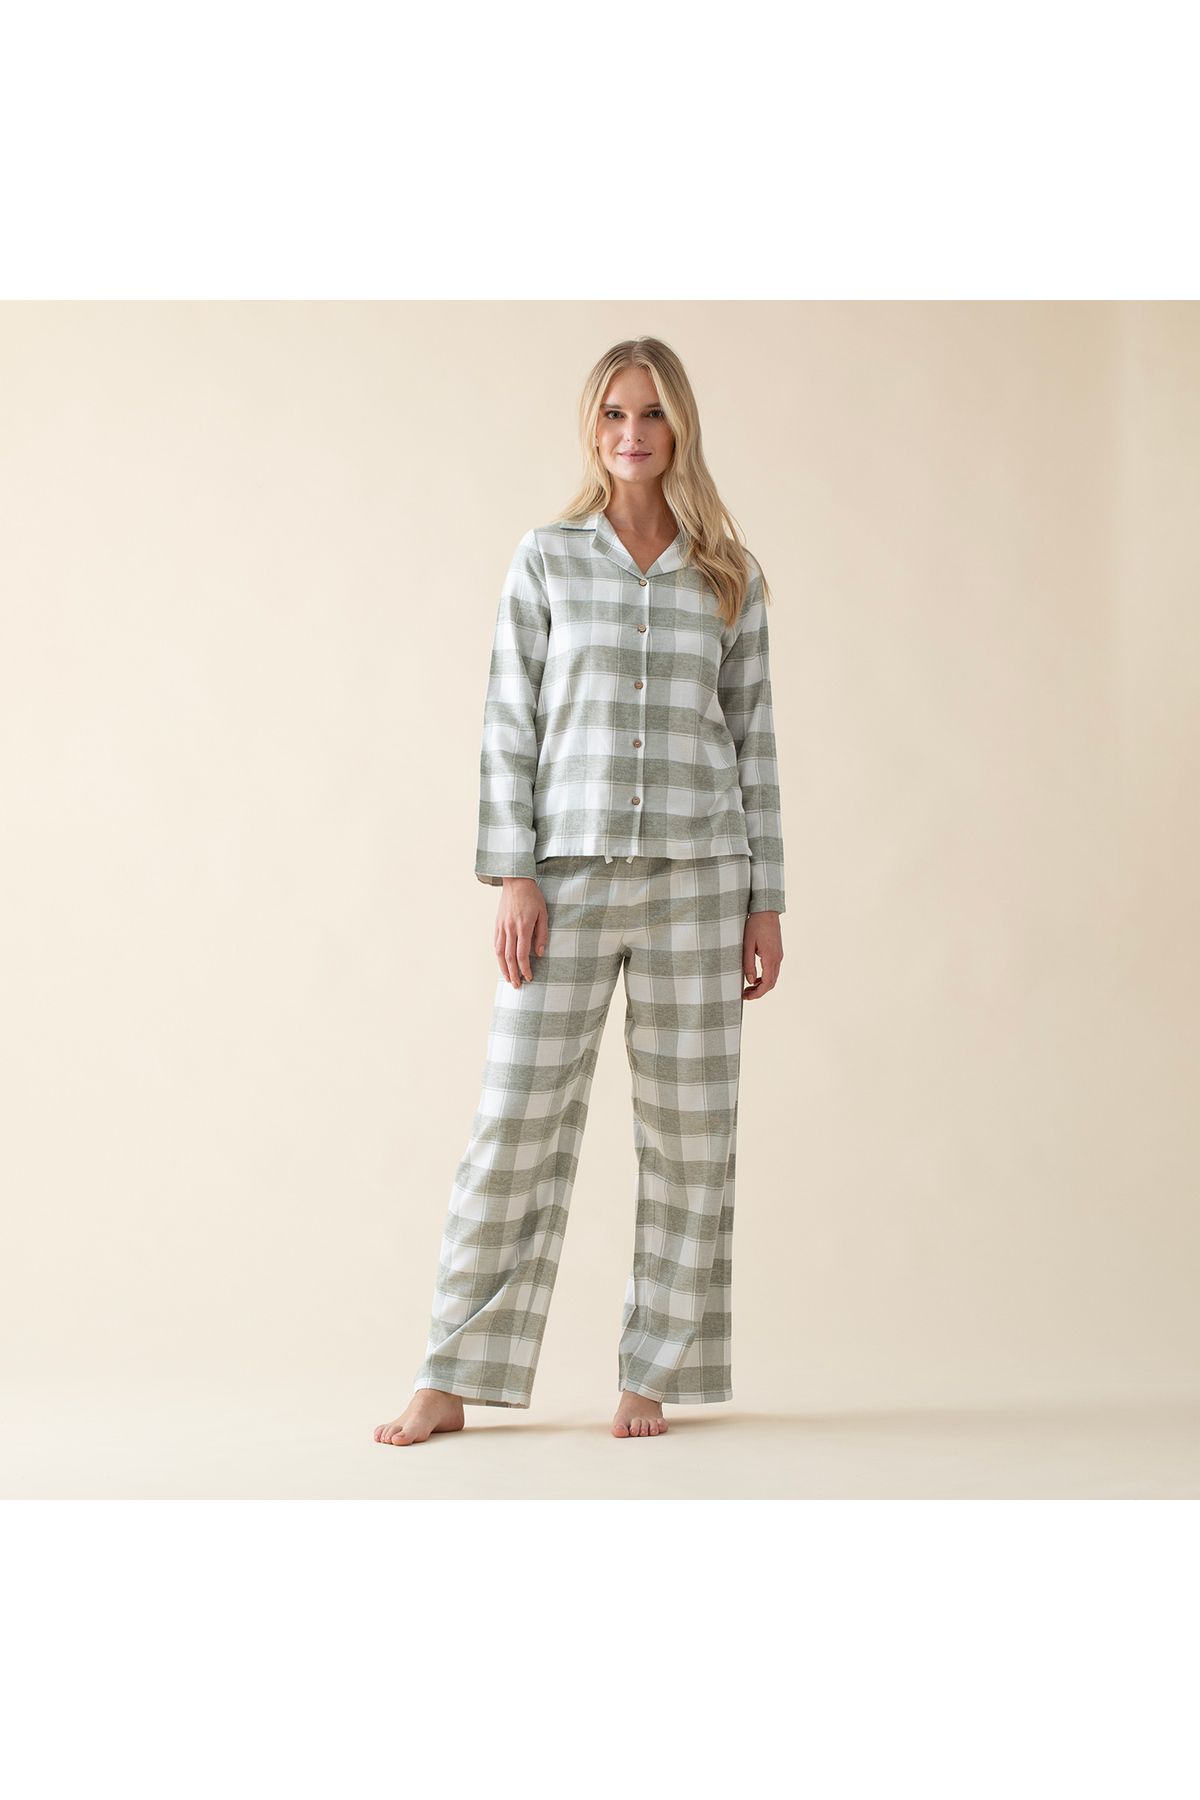 Chakra Monteverde Kadın Pijama Takımı Ekru/Yeşil